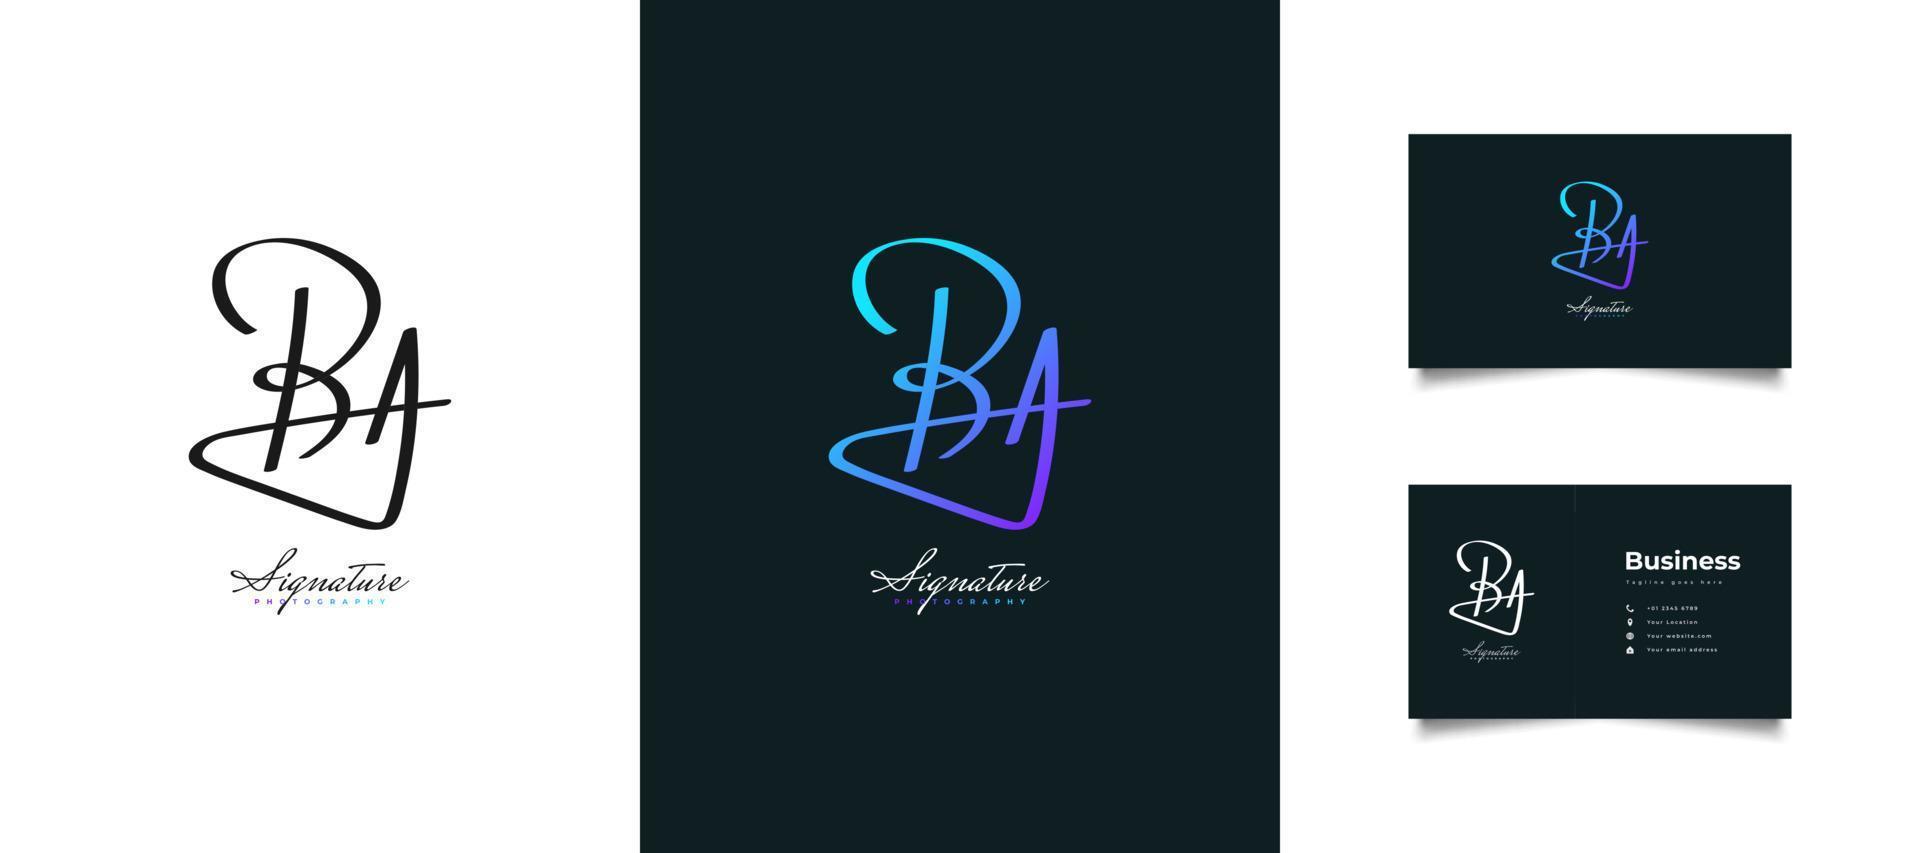 Anfangsbuchstabe b und ein Logodesign mit Handschriftstil in buntem Farbverlauf. ba-signaturlogo oder symbol für geschäftsidentität vektor